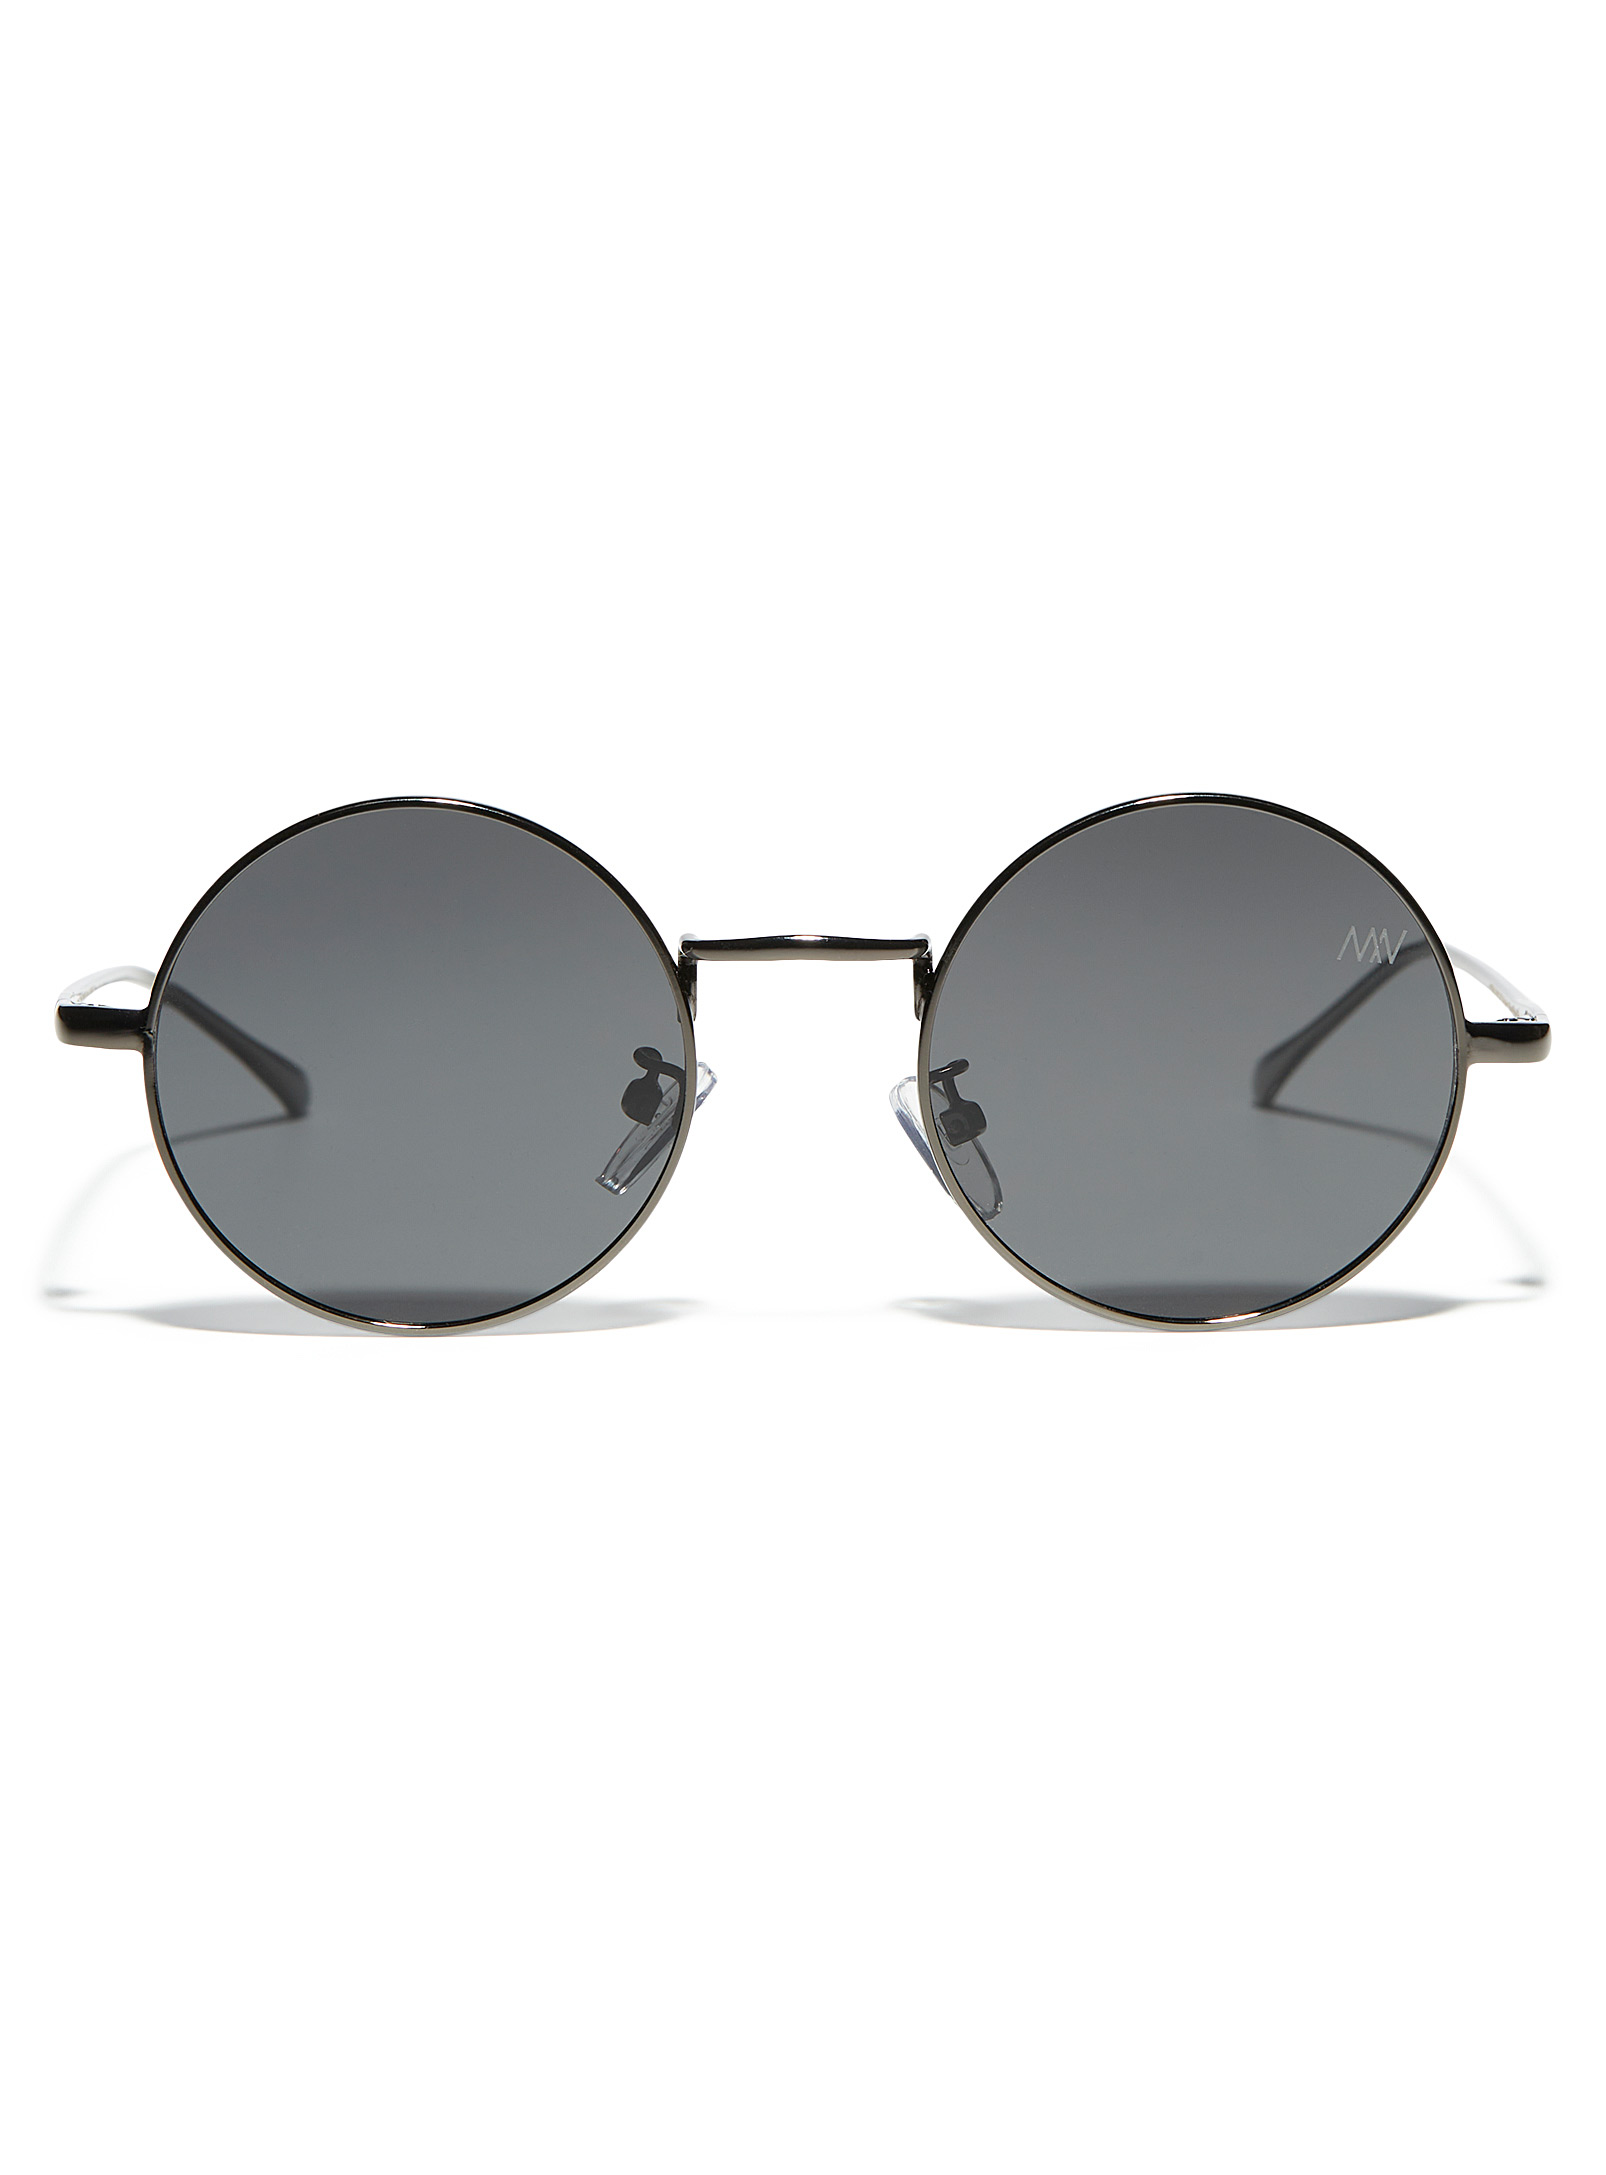 Matt & Nat - Men's Cole SM round sunglasses